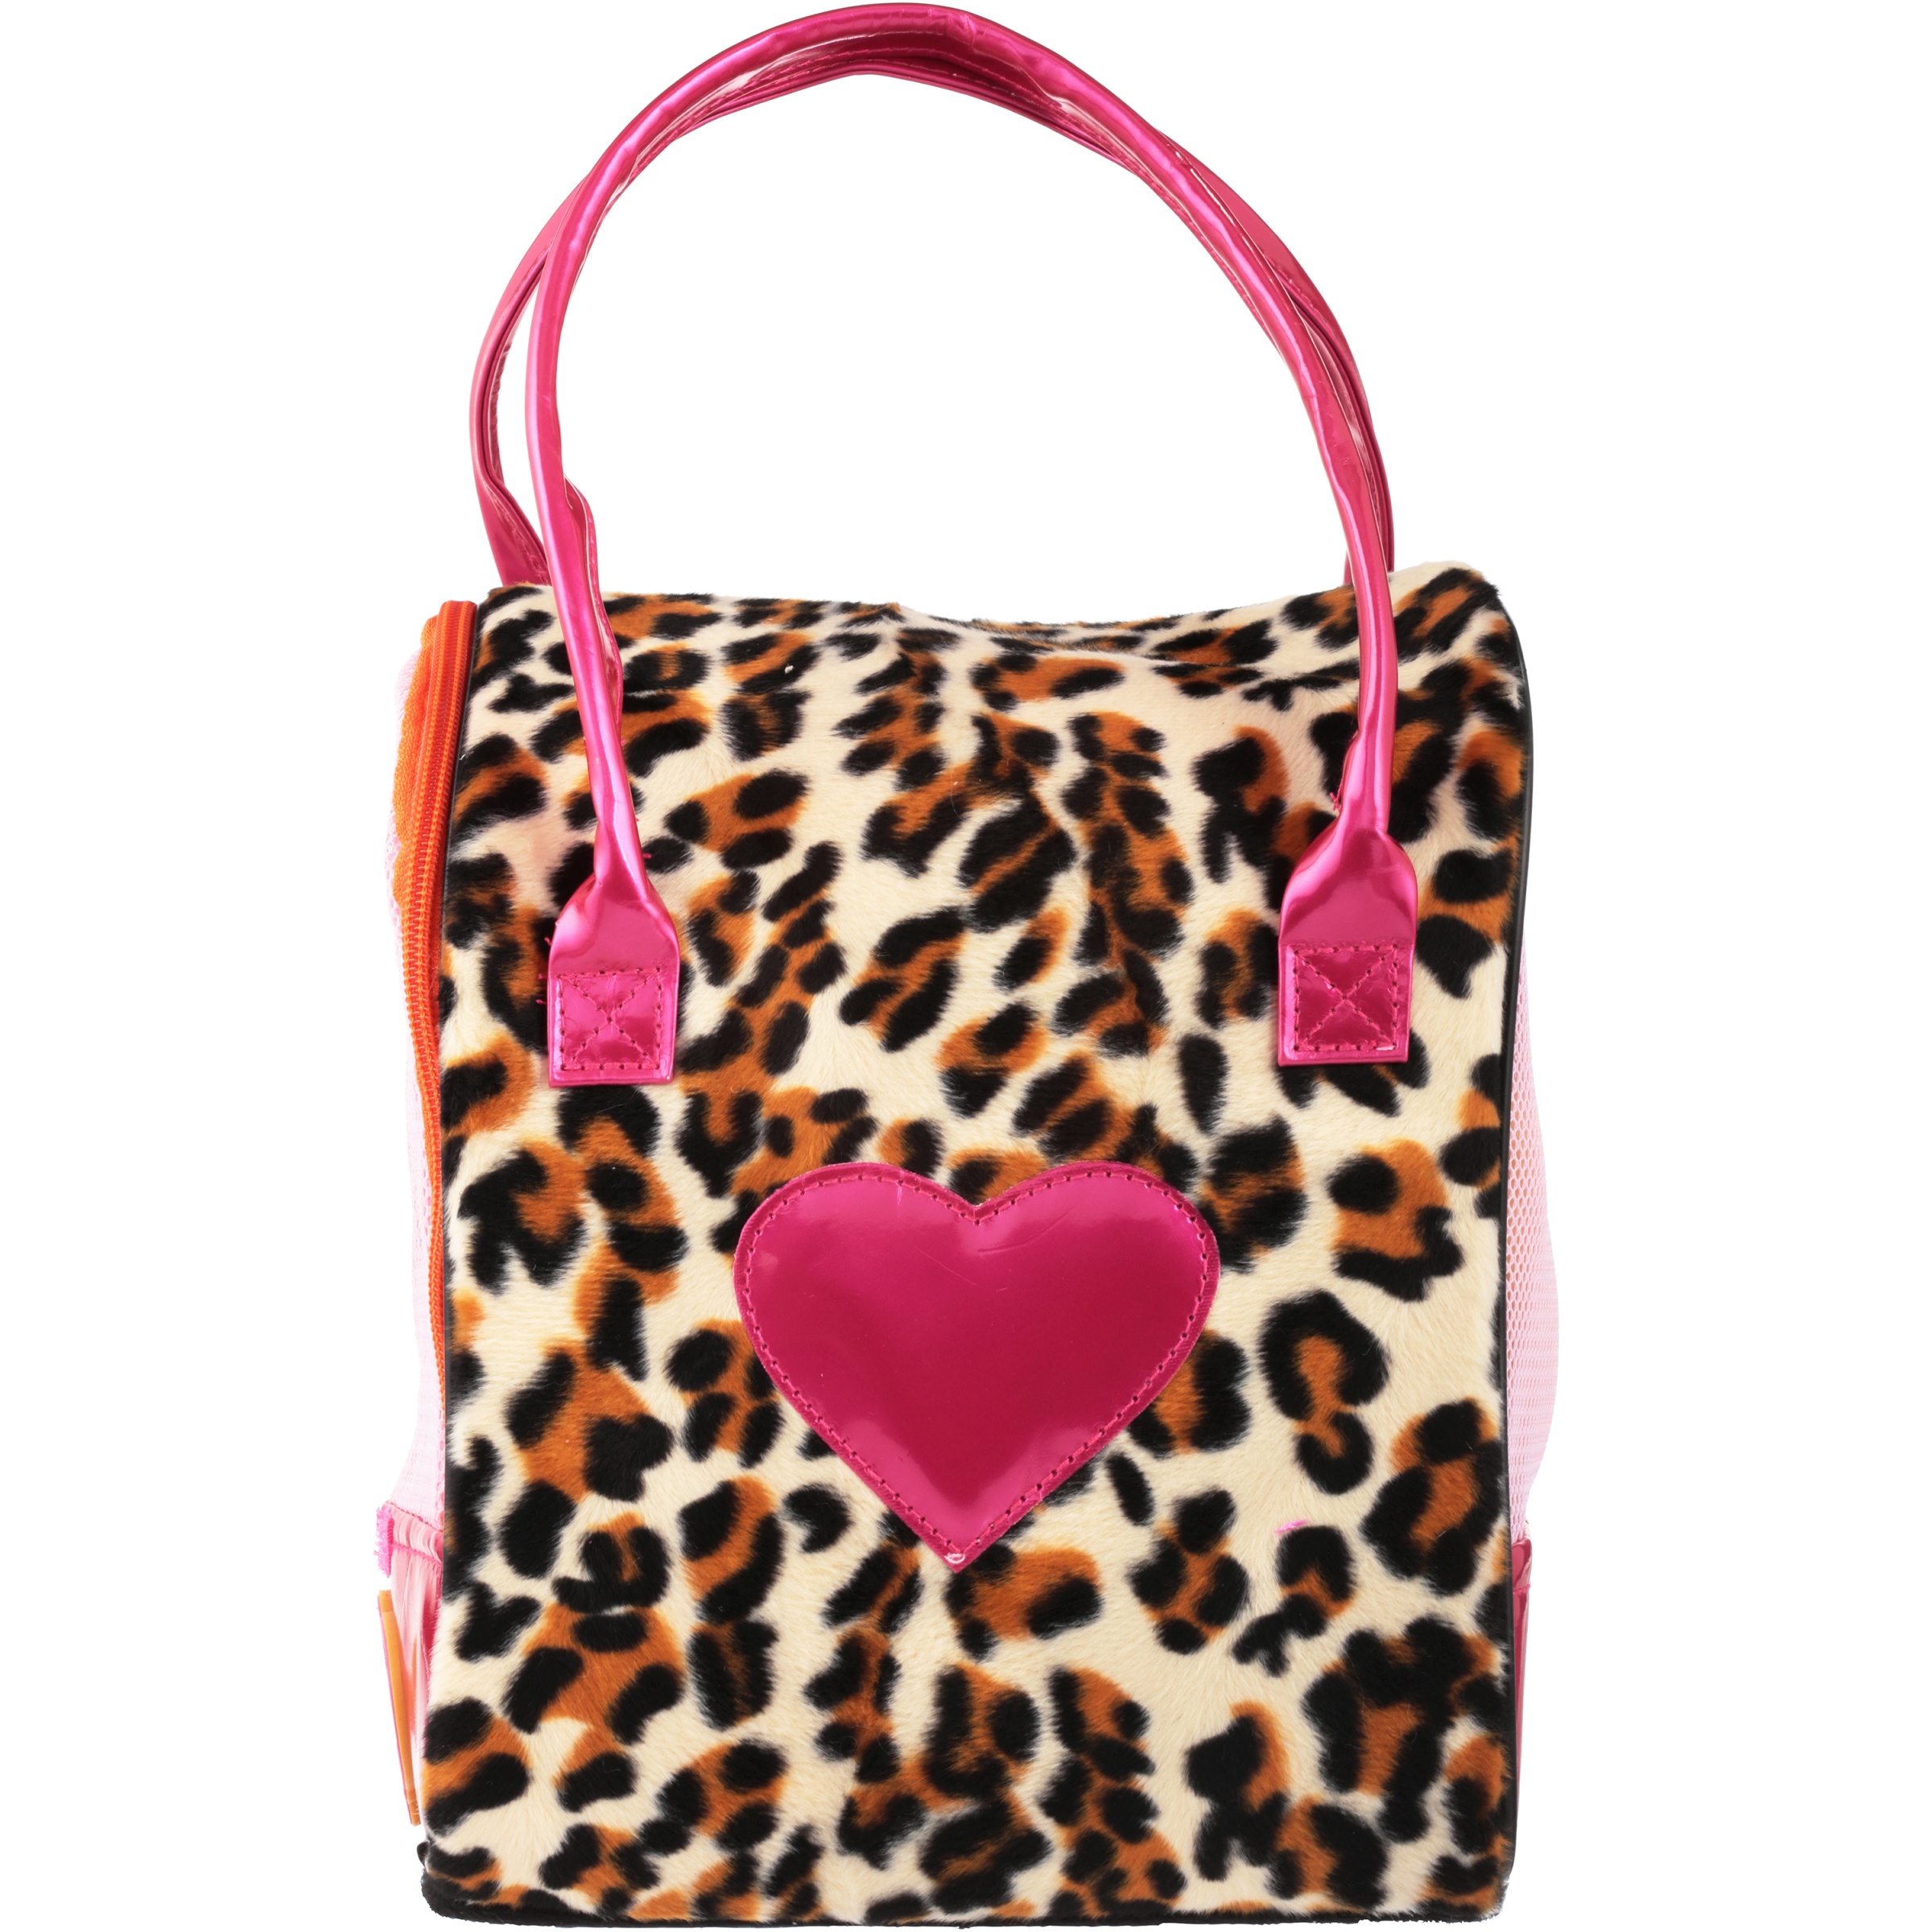 Pucci Pups Pug & Leopard Print Bag - image 4 of 4